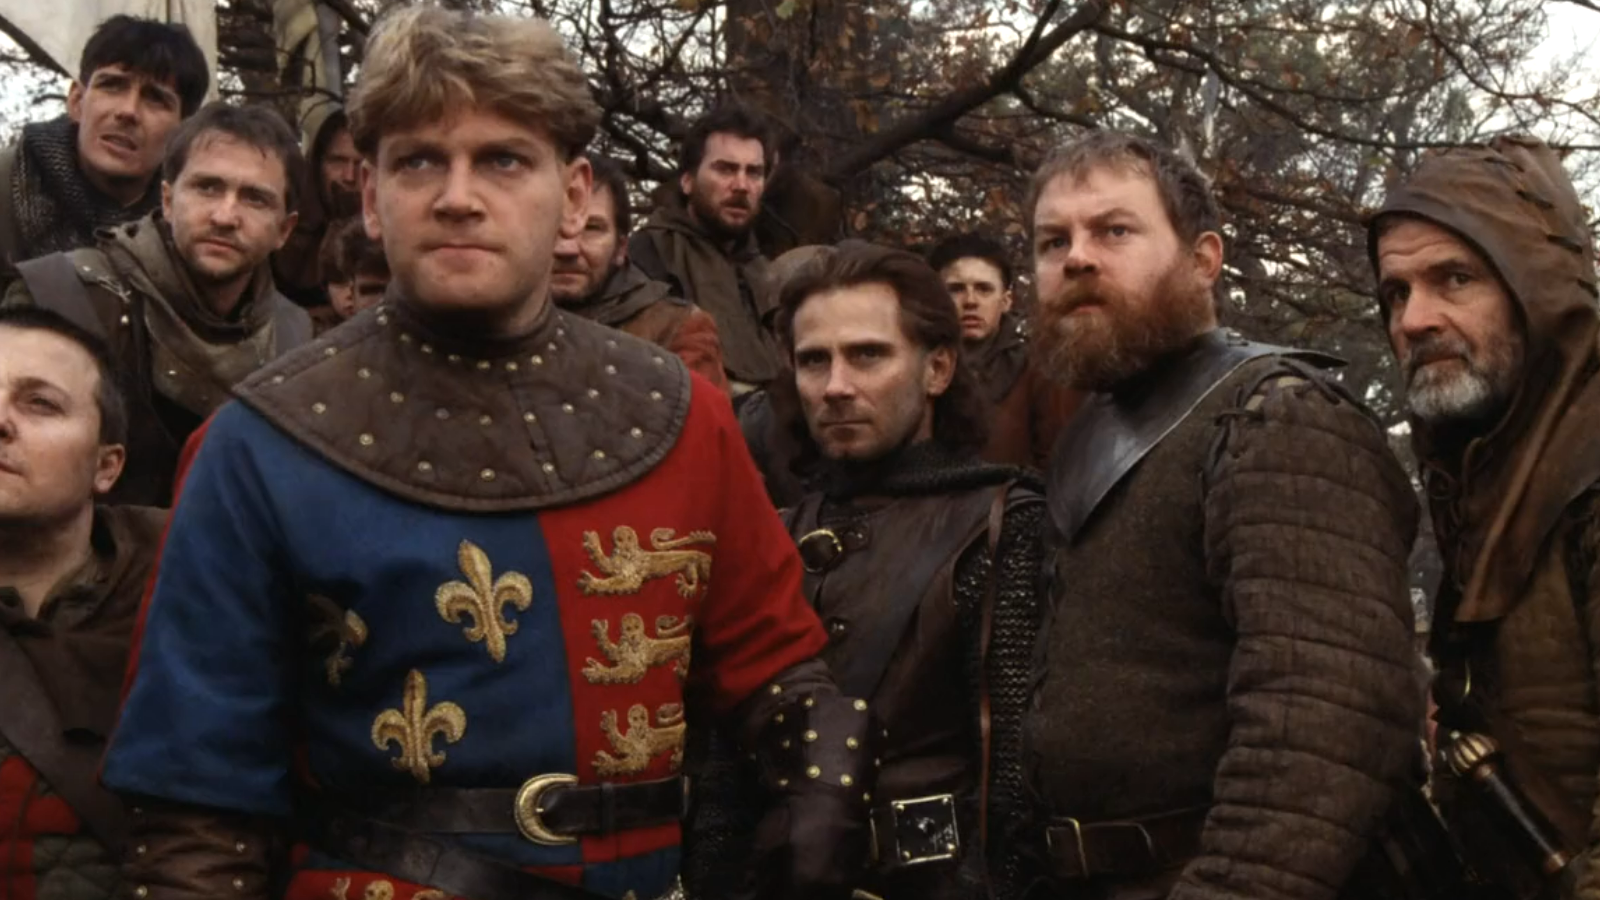 دانلود فیلم Henry V 1989